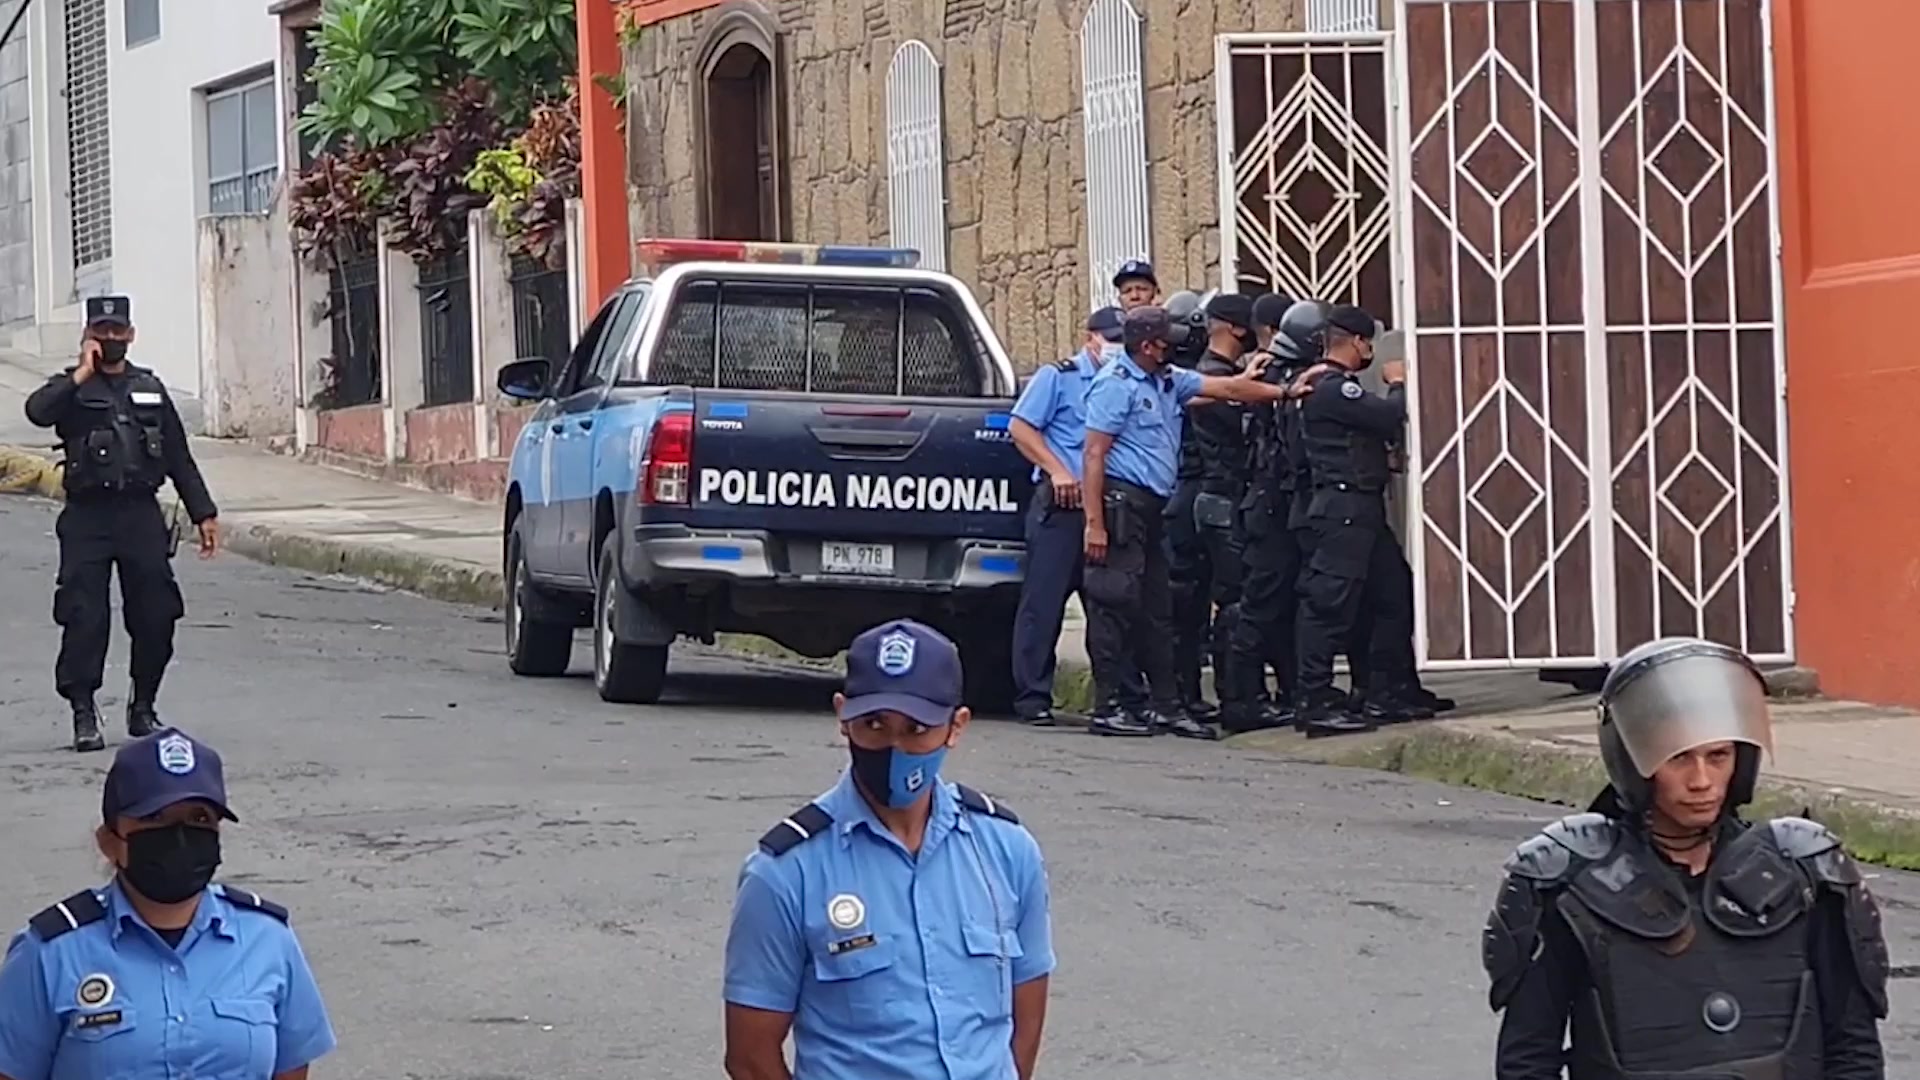 La Policía nicaragüense hostiga, amenaza y persigue a miembros y fieles de la Iglesia Católica